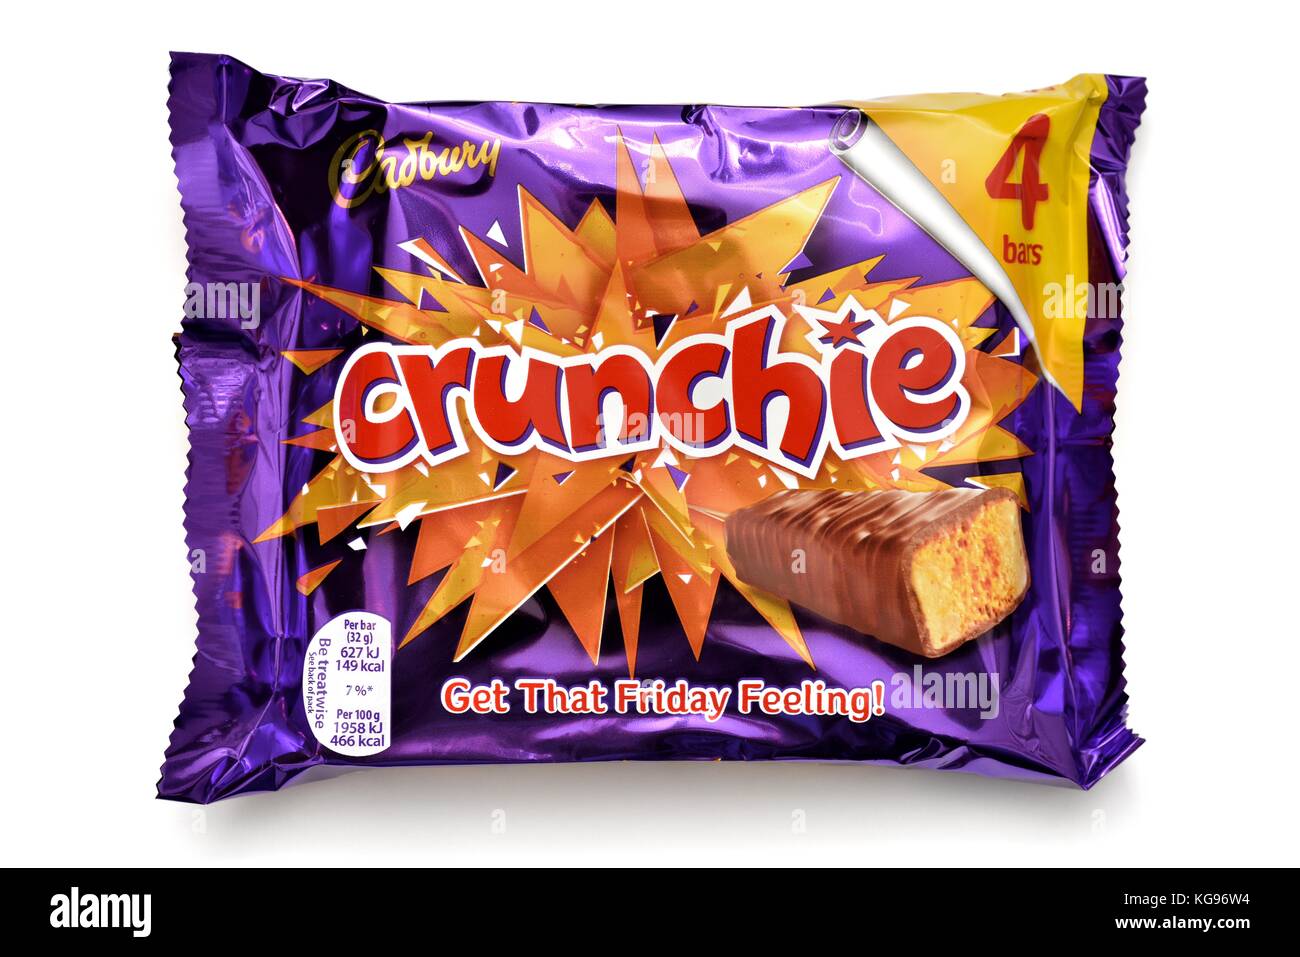 Cadbury crunchie 4 bar pack Stock Photo